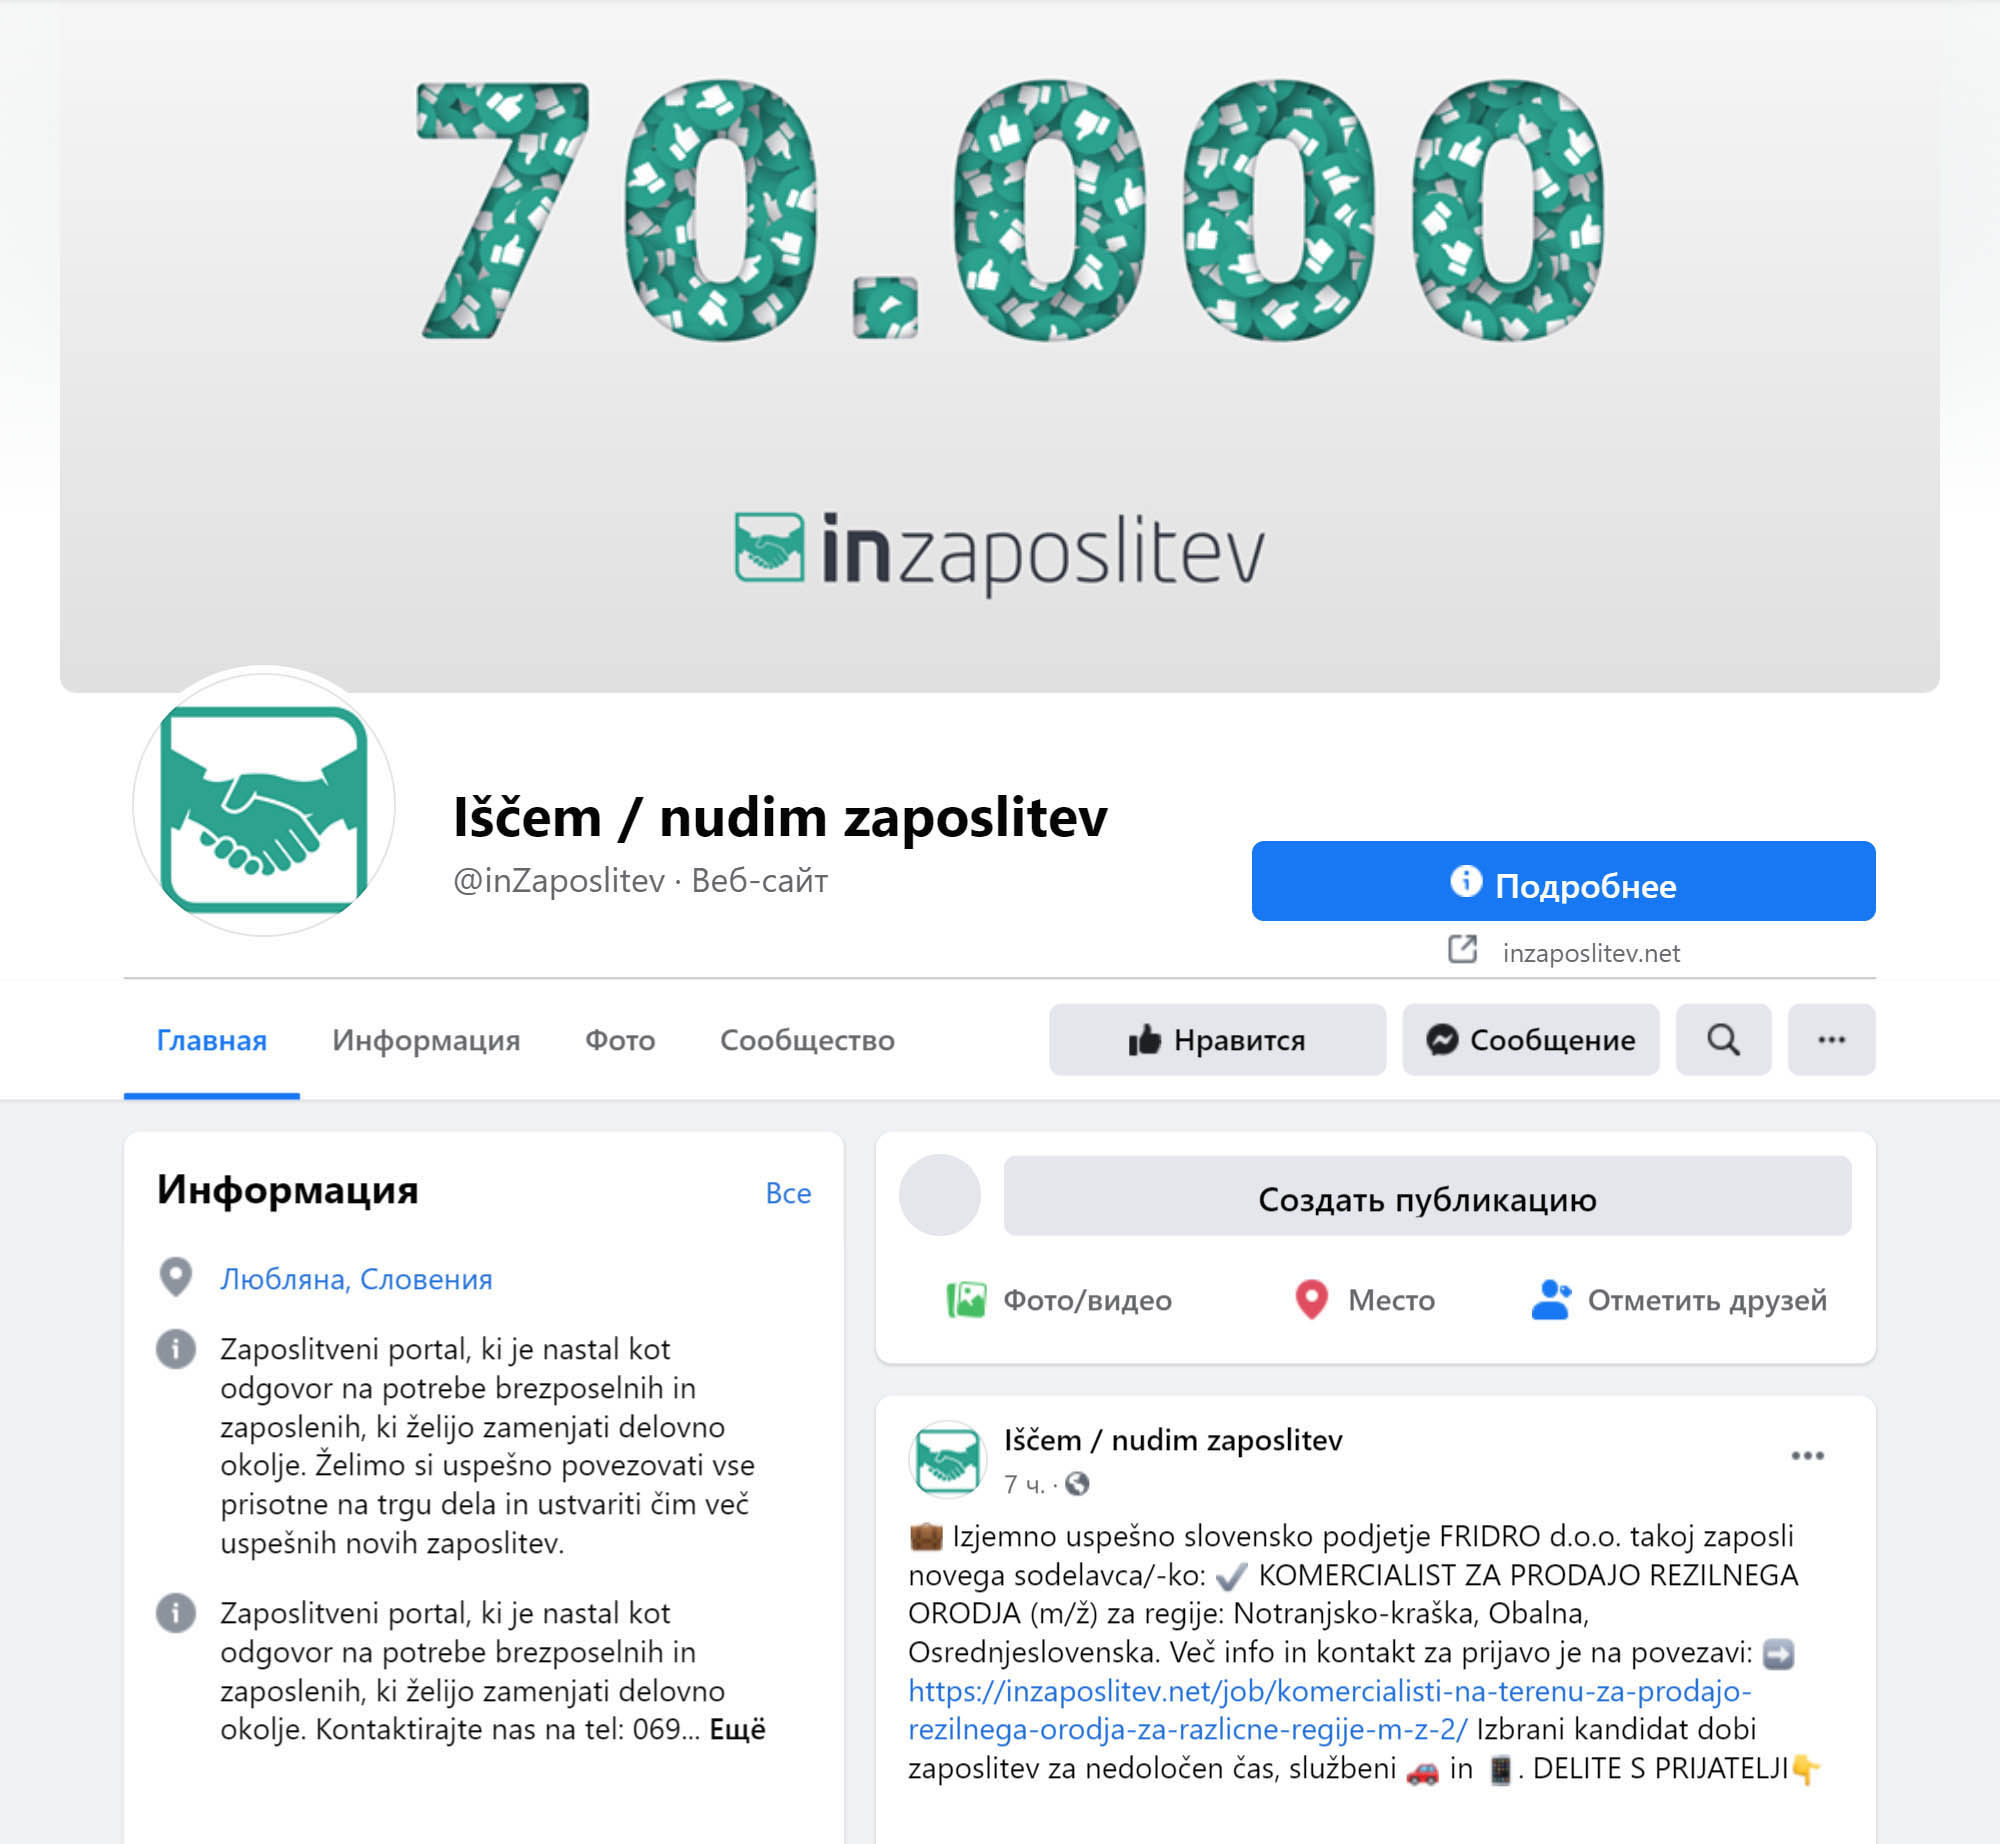 Inzaposlitev — это одна из самых популярных словенских групп в «Фейсбуке» для размещения вакансий. Там я и искала работу